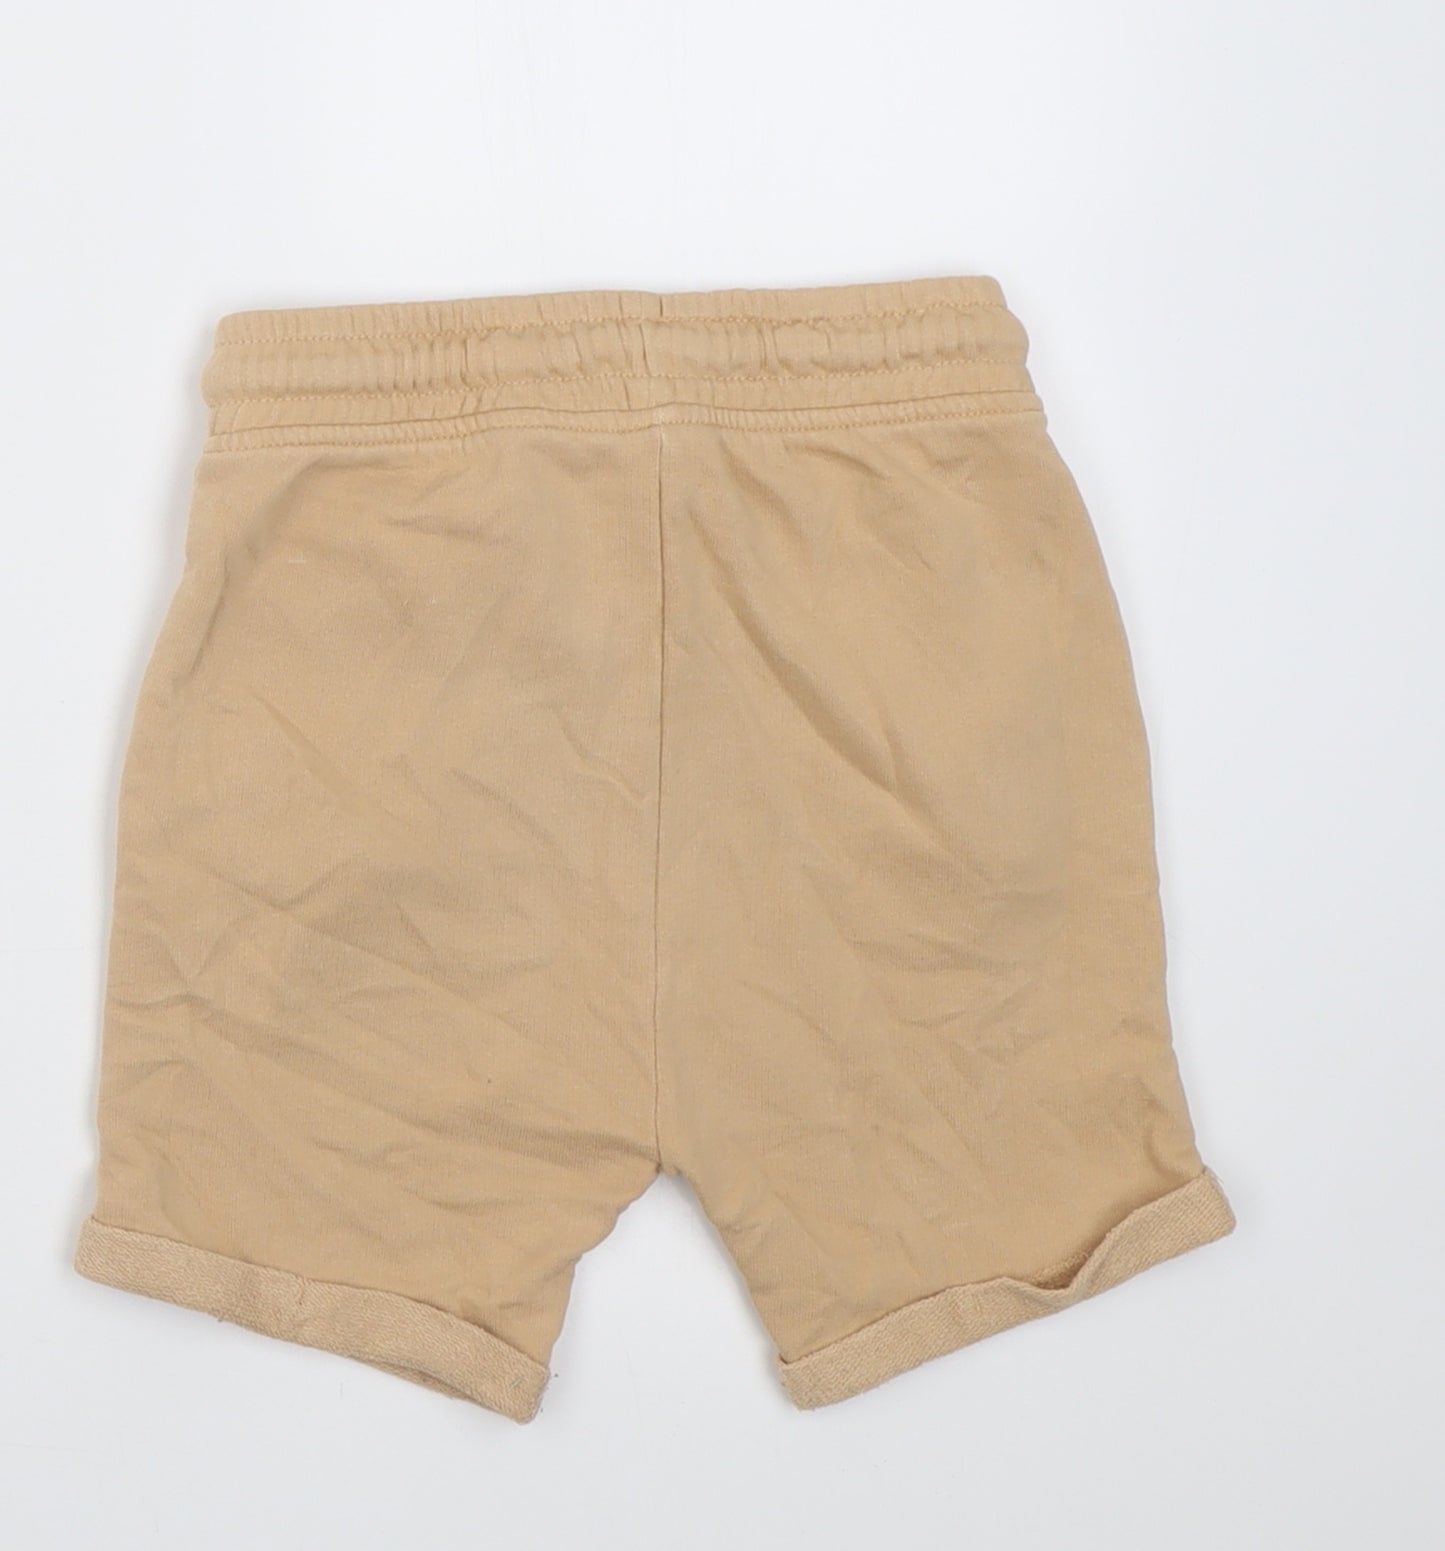 George Girls Beige  Cotton Sweat Shorts Size 4-5 Years  Regular Tie